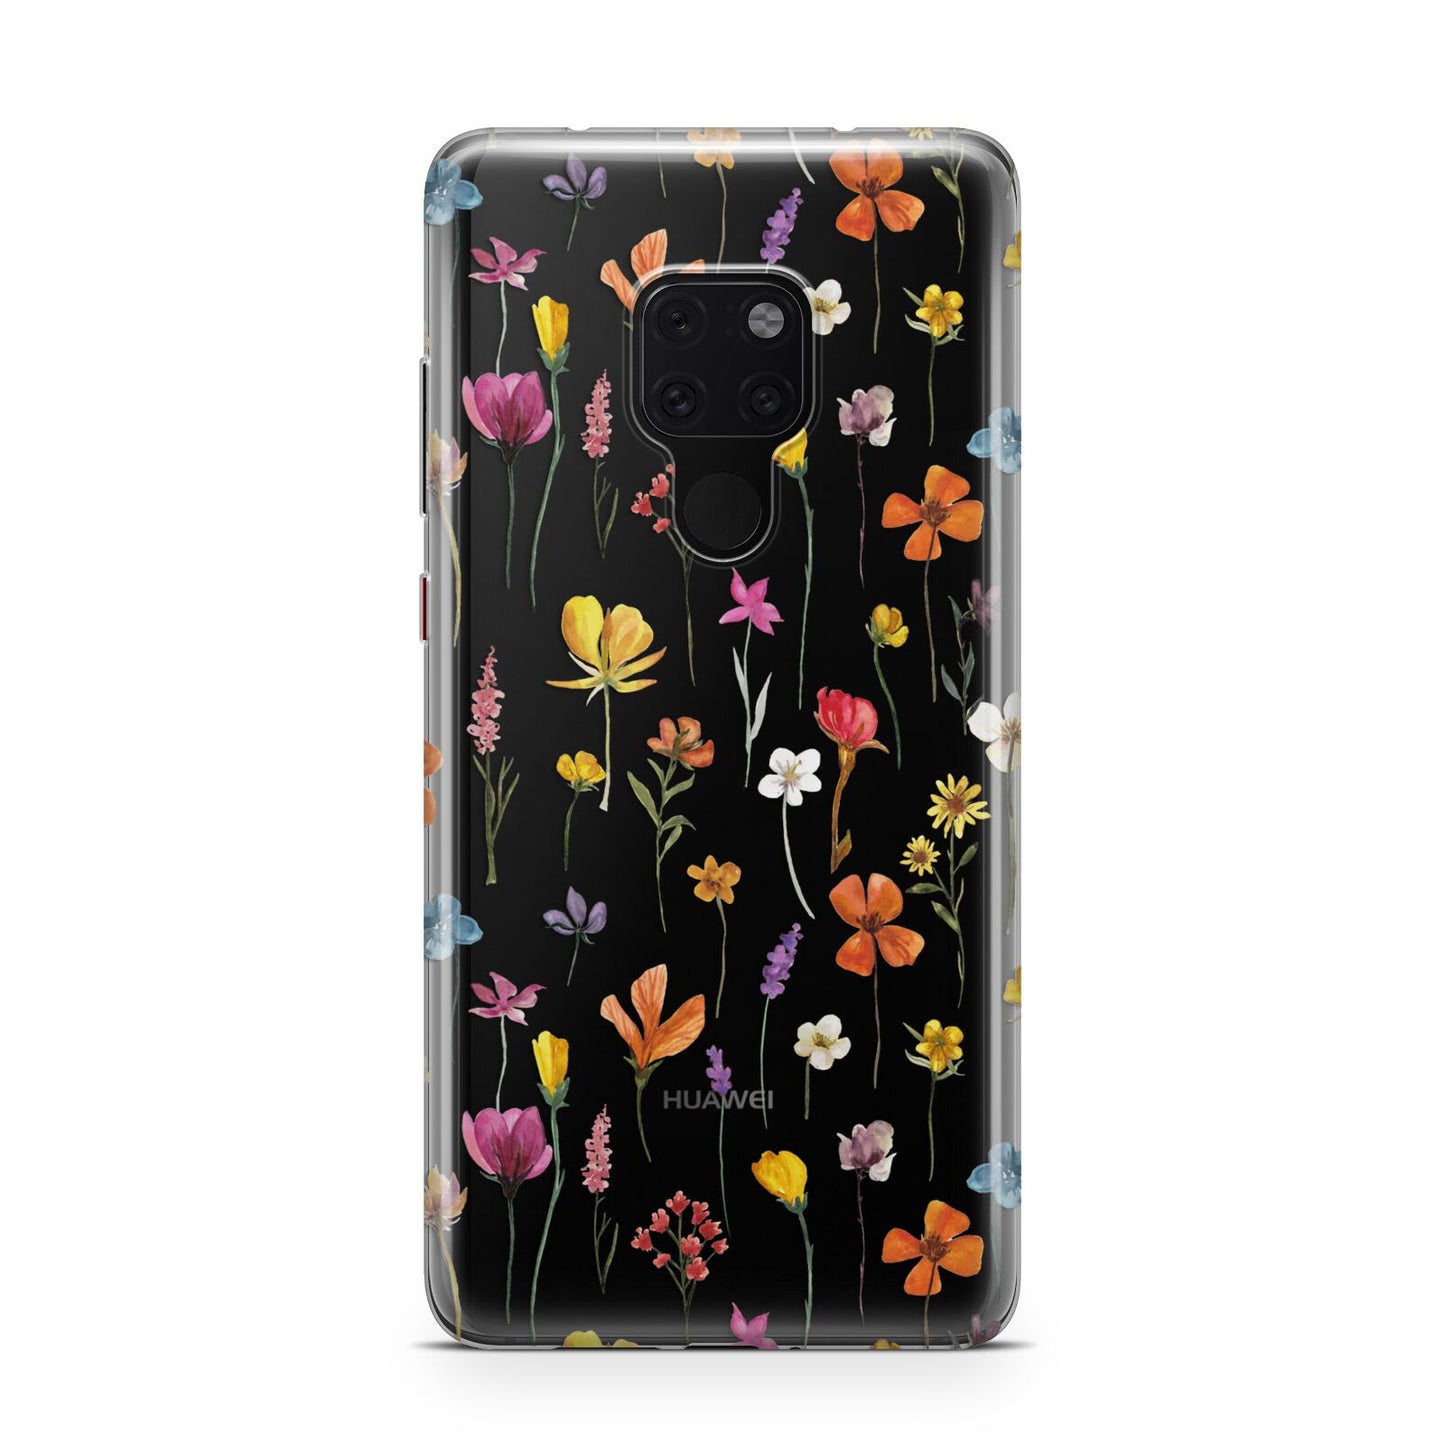 Botanical Floral Huawei Mate 20 Phone Case